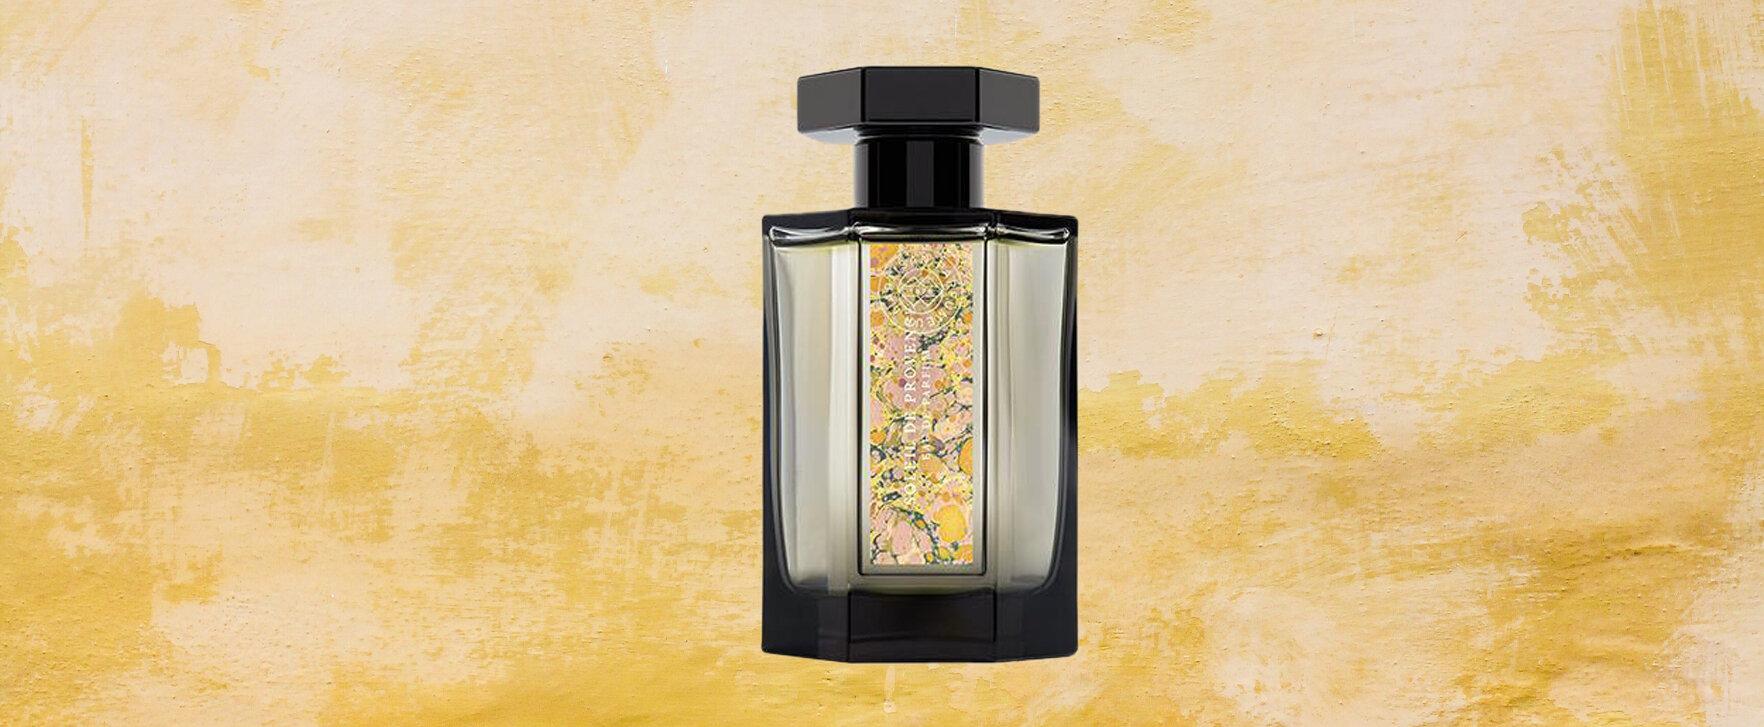 “Soleil de Provence” - New Perfume by L’Artisan Parfumeur